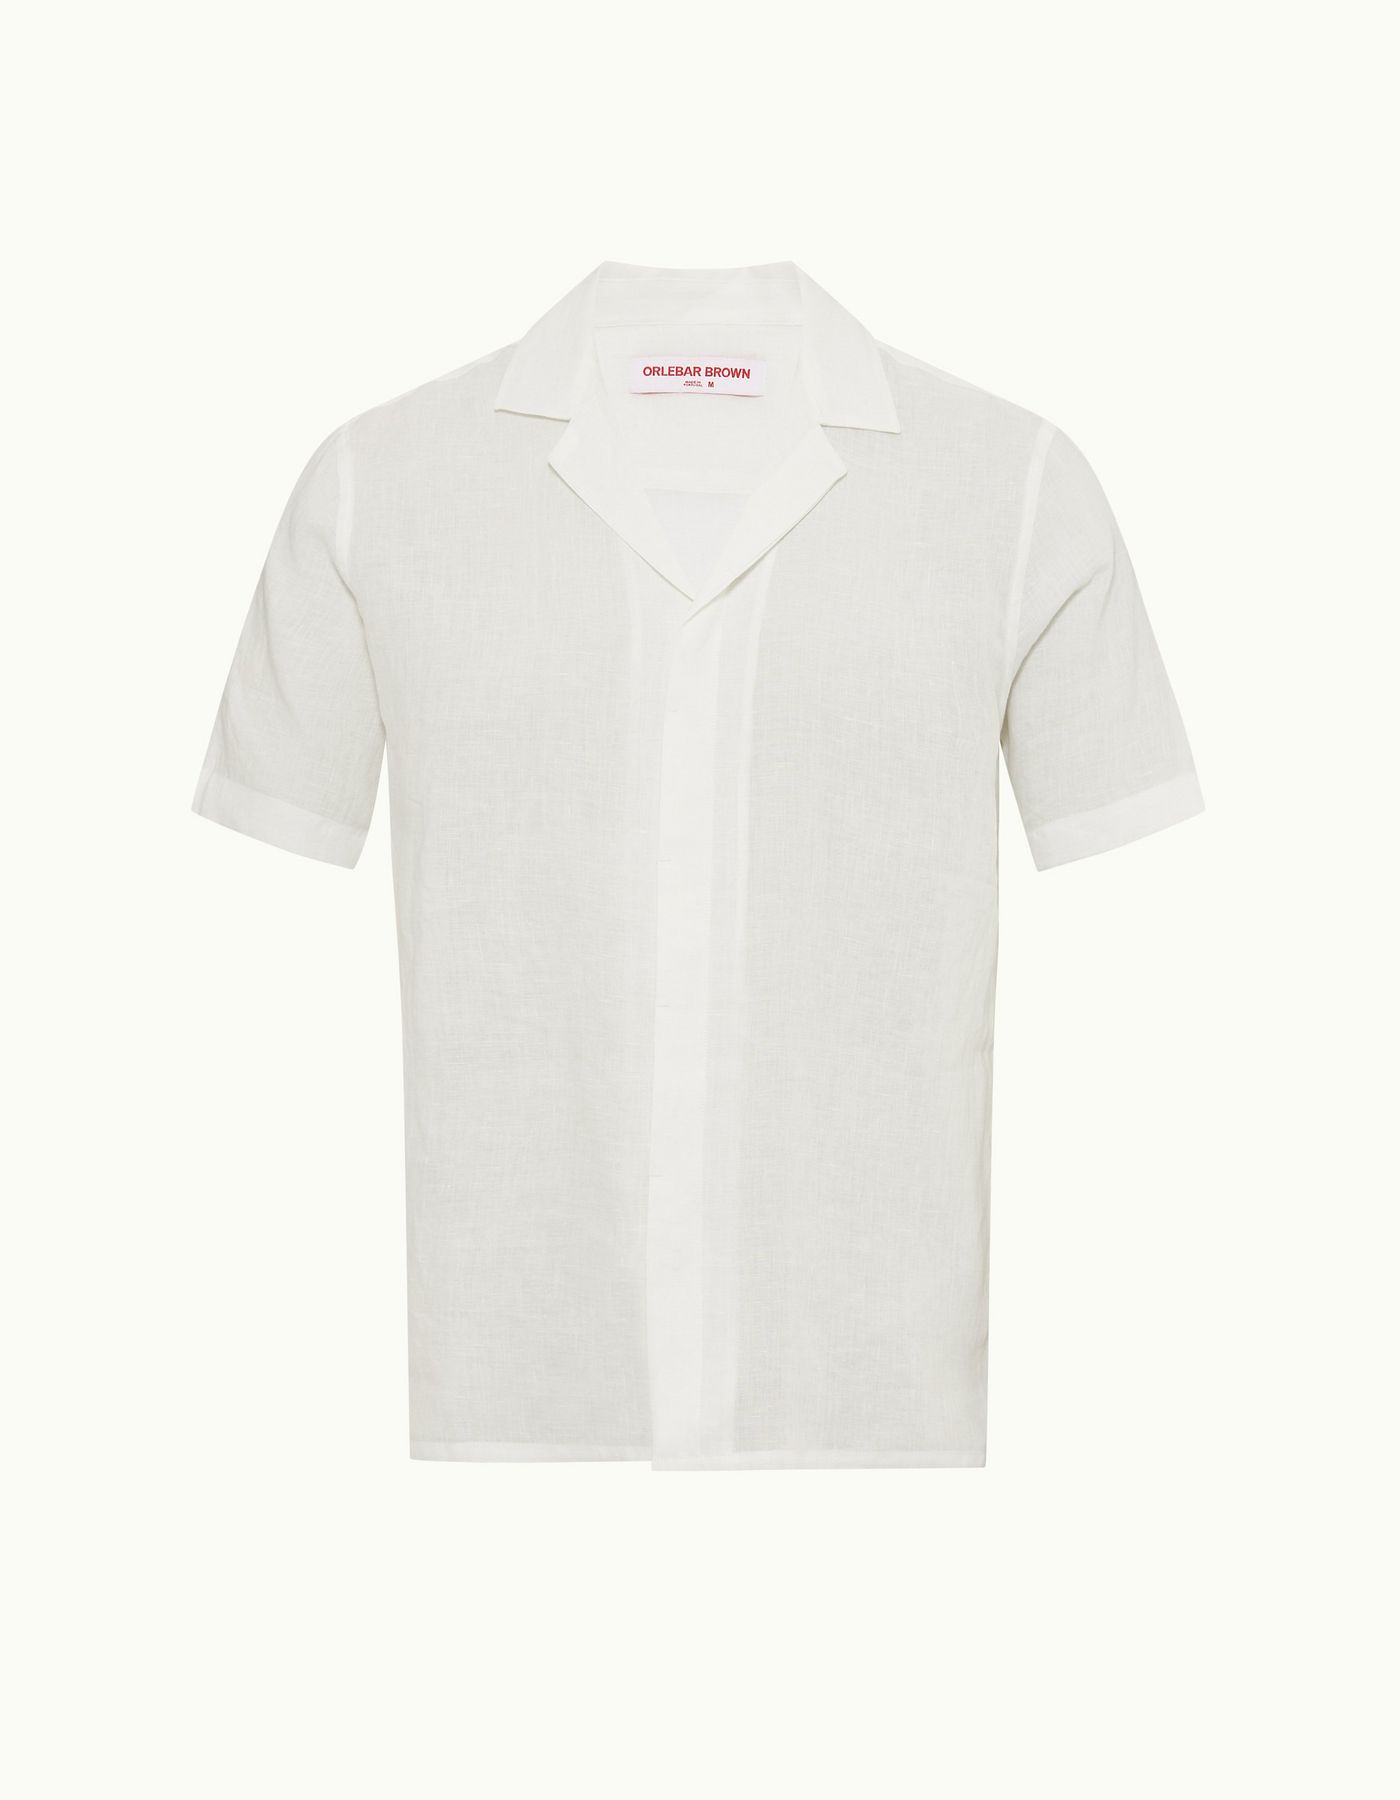 Maitan Linen - Mens Relaxed Fit Capri Collar Linen Shirt in White